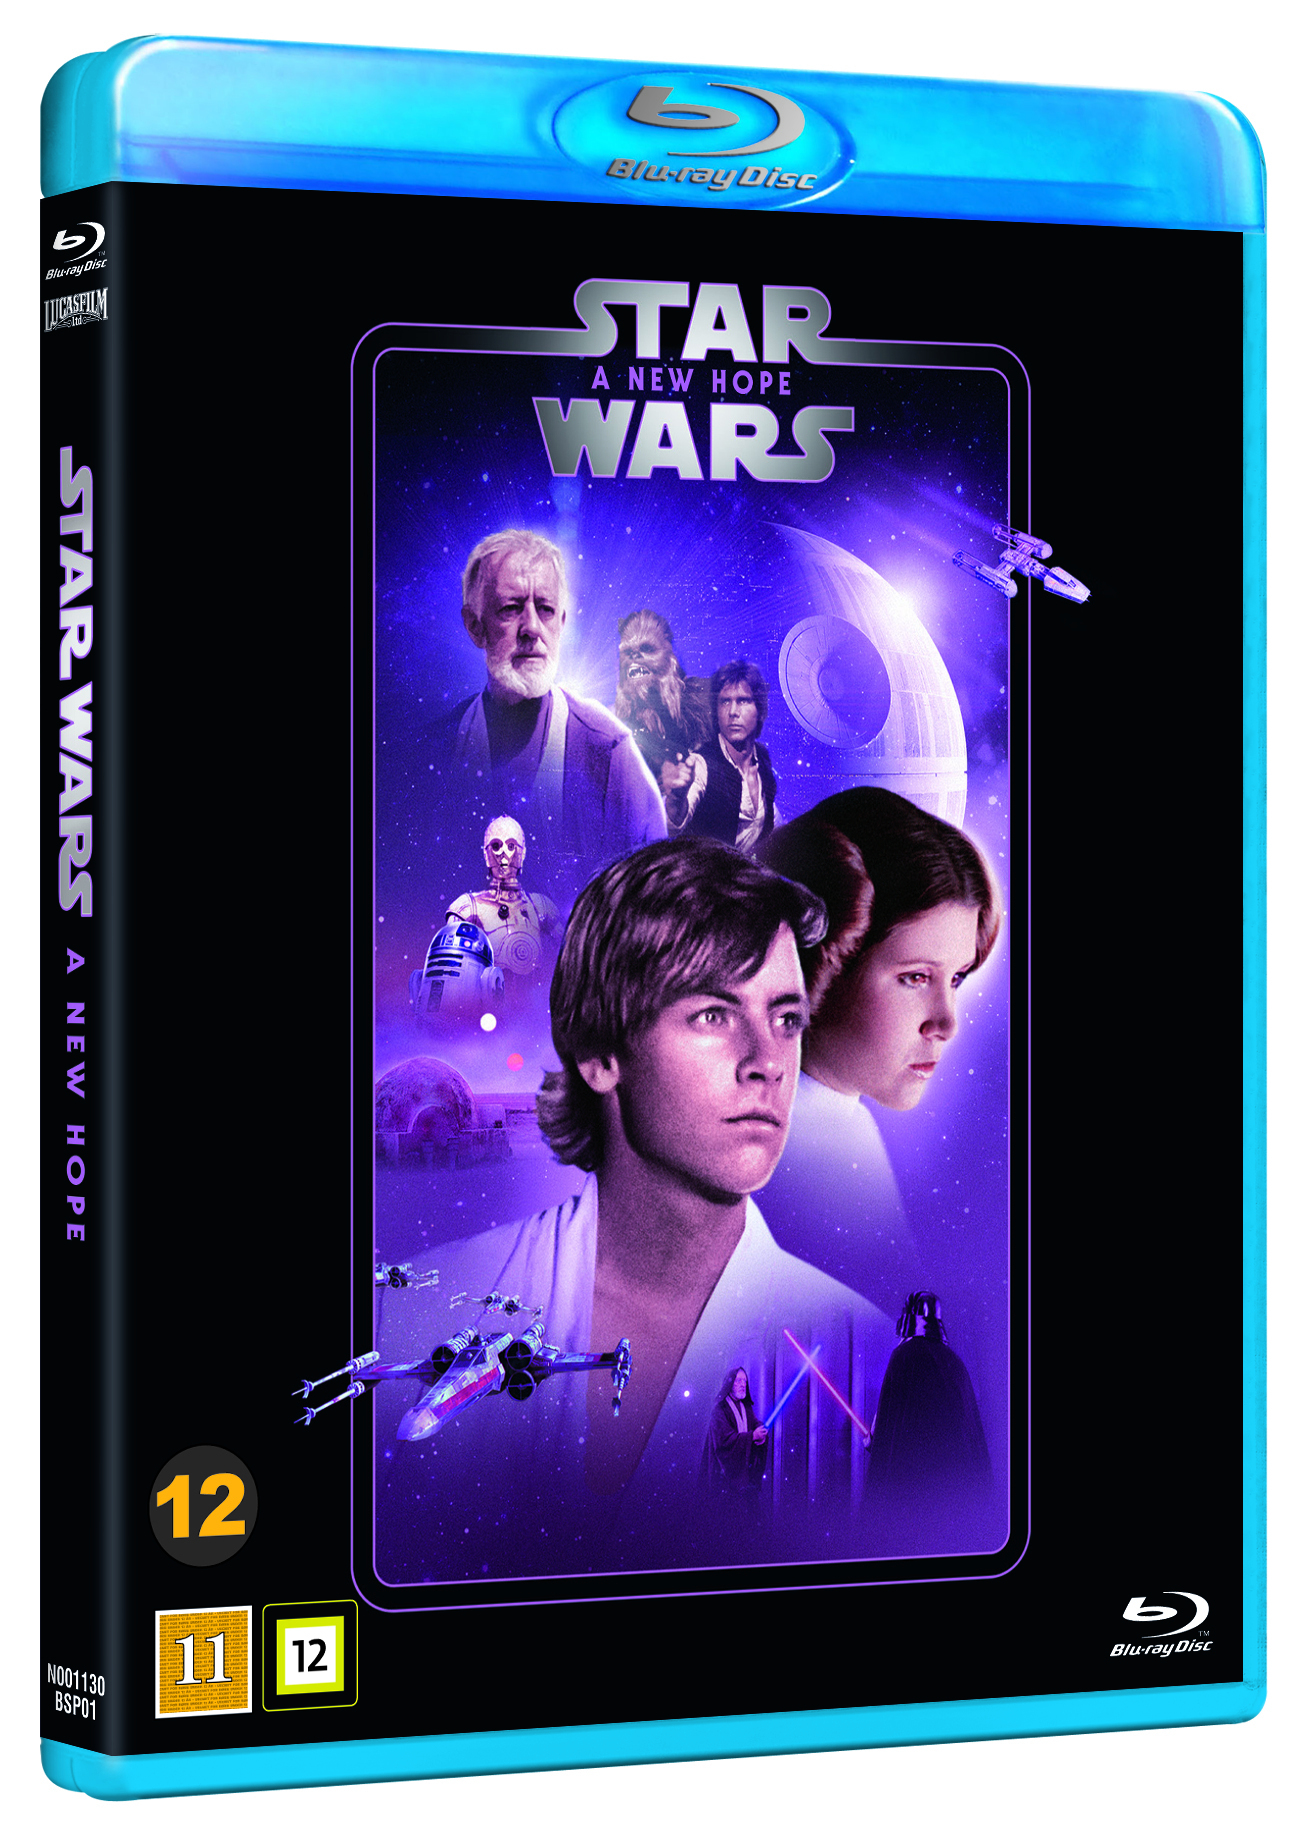 Star Wars: Episode 4 - A NEW HOPE - Filmer og TV-serier